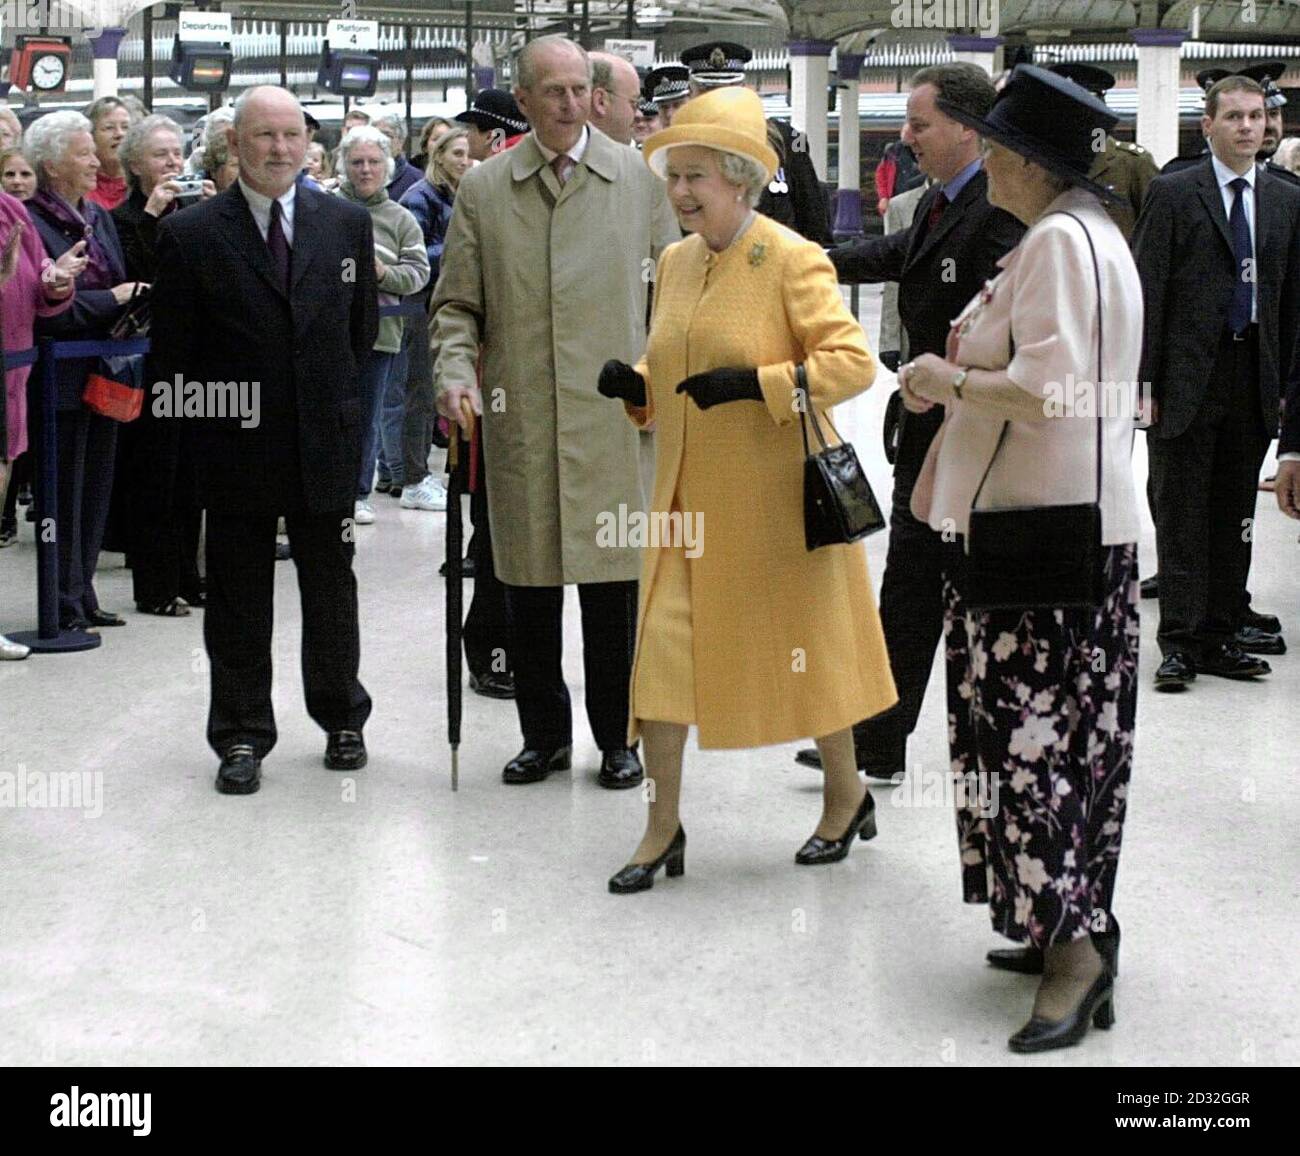 Die Königin und der Herzog von Edinburgh kommen am Bahnhof Aberdeen in Schottland an. Die Königin und der Herzog von Edinburgh wurden bei der Ankunft im Duthie Park im Rahmen der Feierlichkeiten zum Goldenen Jubiläum von Tausenden von Wohlbehelfern begrüßt. Stockfoto